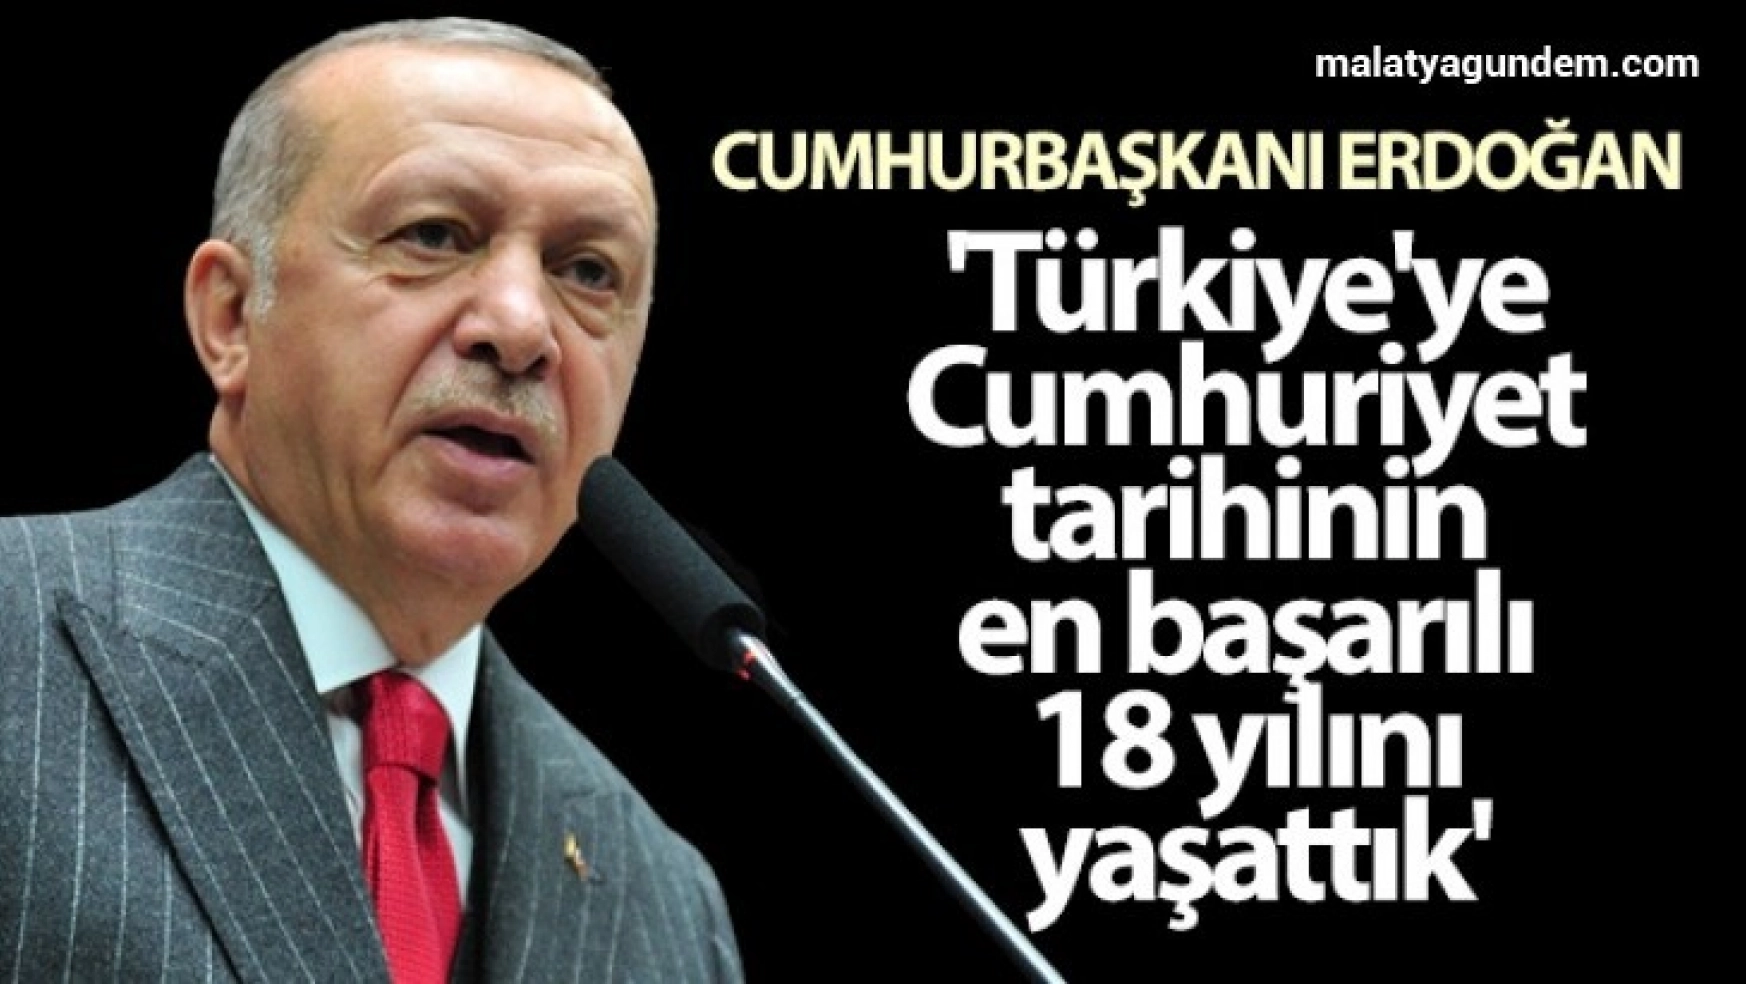 Cumhurbaşkanı Erdoğan: 'Türkiye'ye Cumhuriyet tarihinin en başarılı 18 yılını yaşattık'